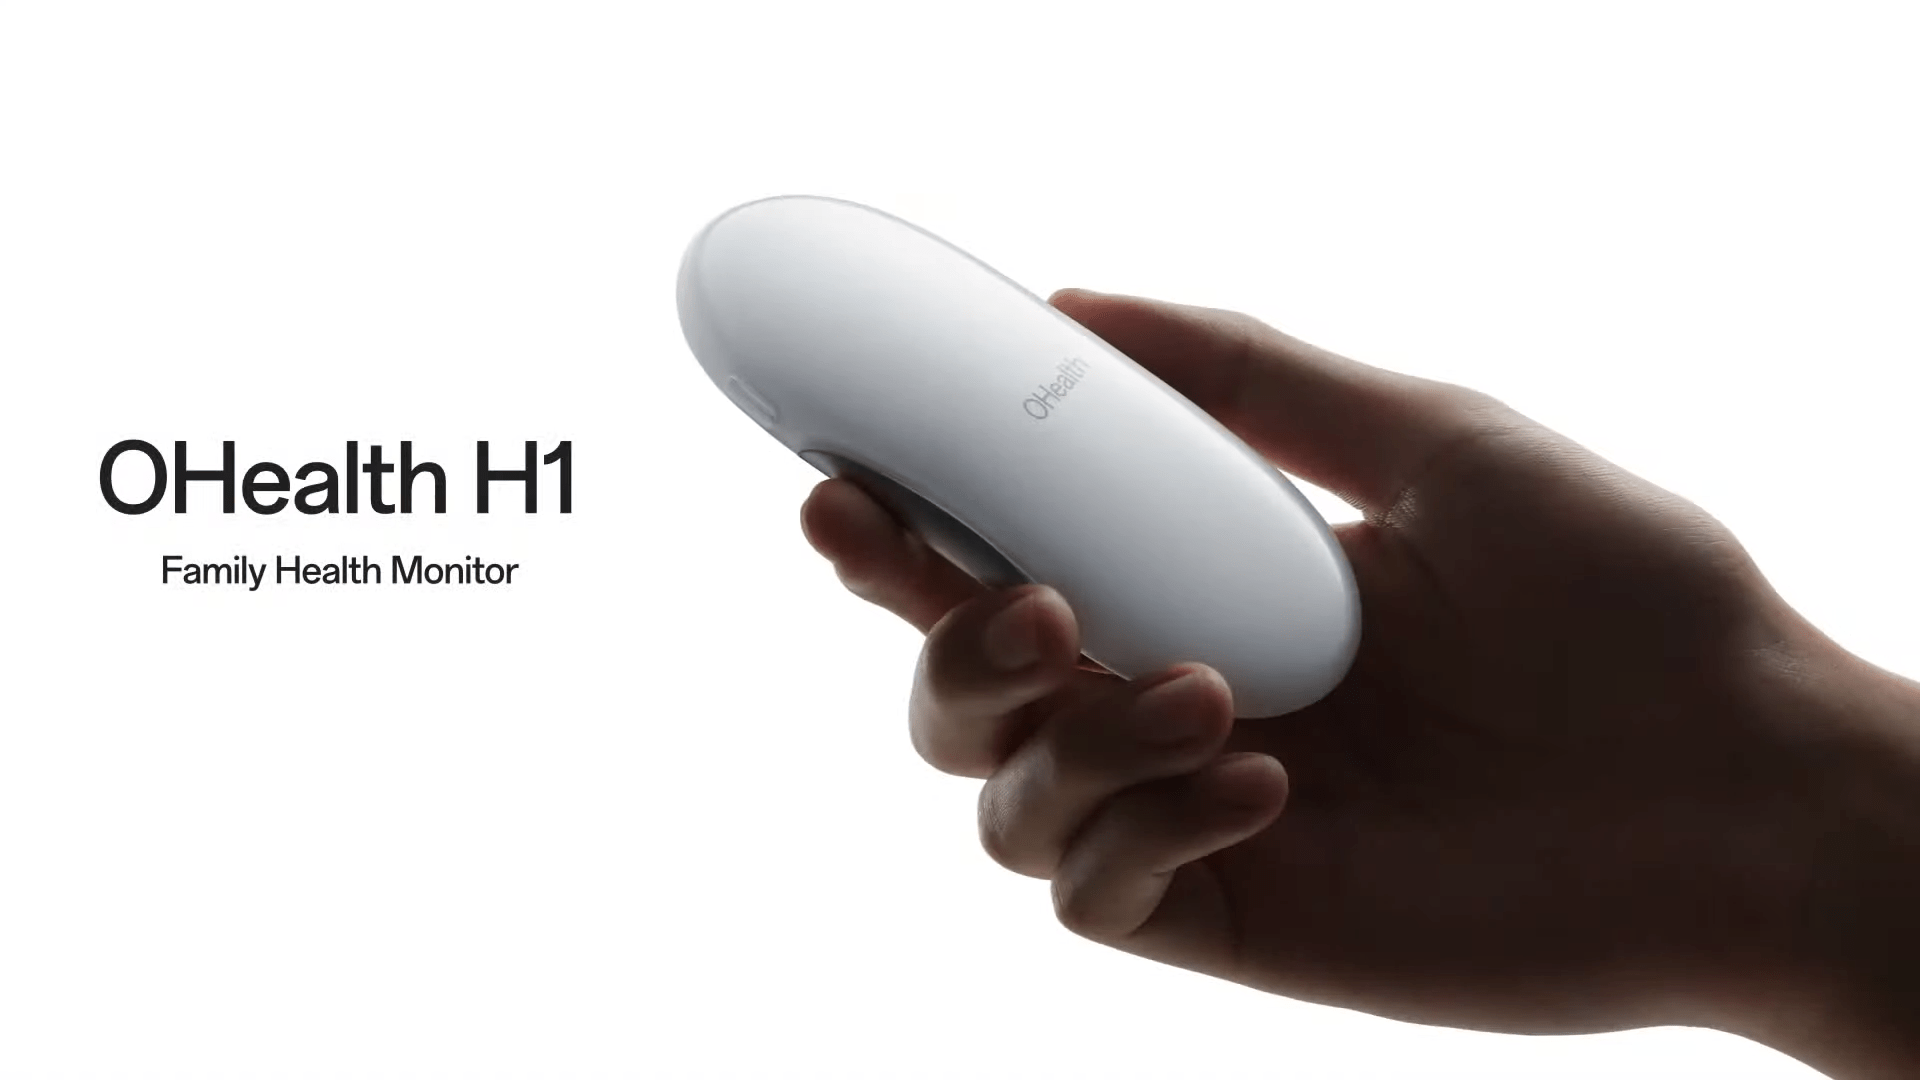 OPPO wprowadza OHealth H1: urządzenie do monitorowania zdrowia dla całej rodziny